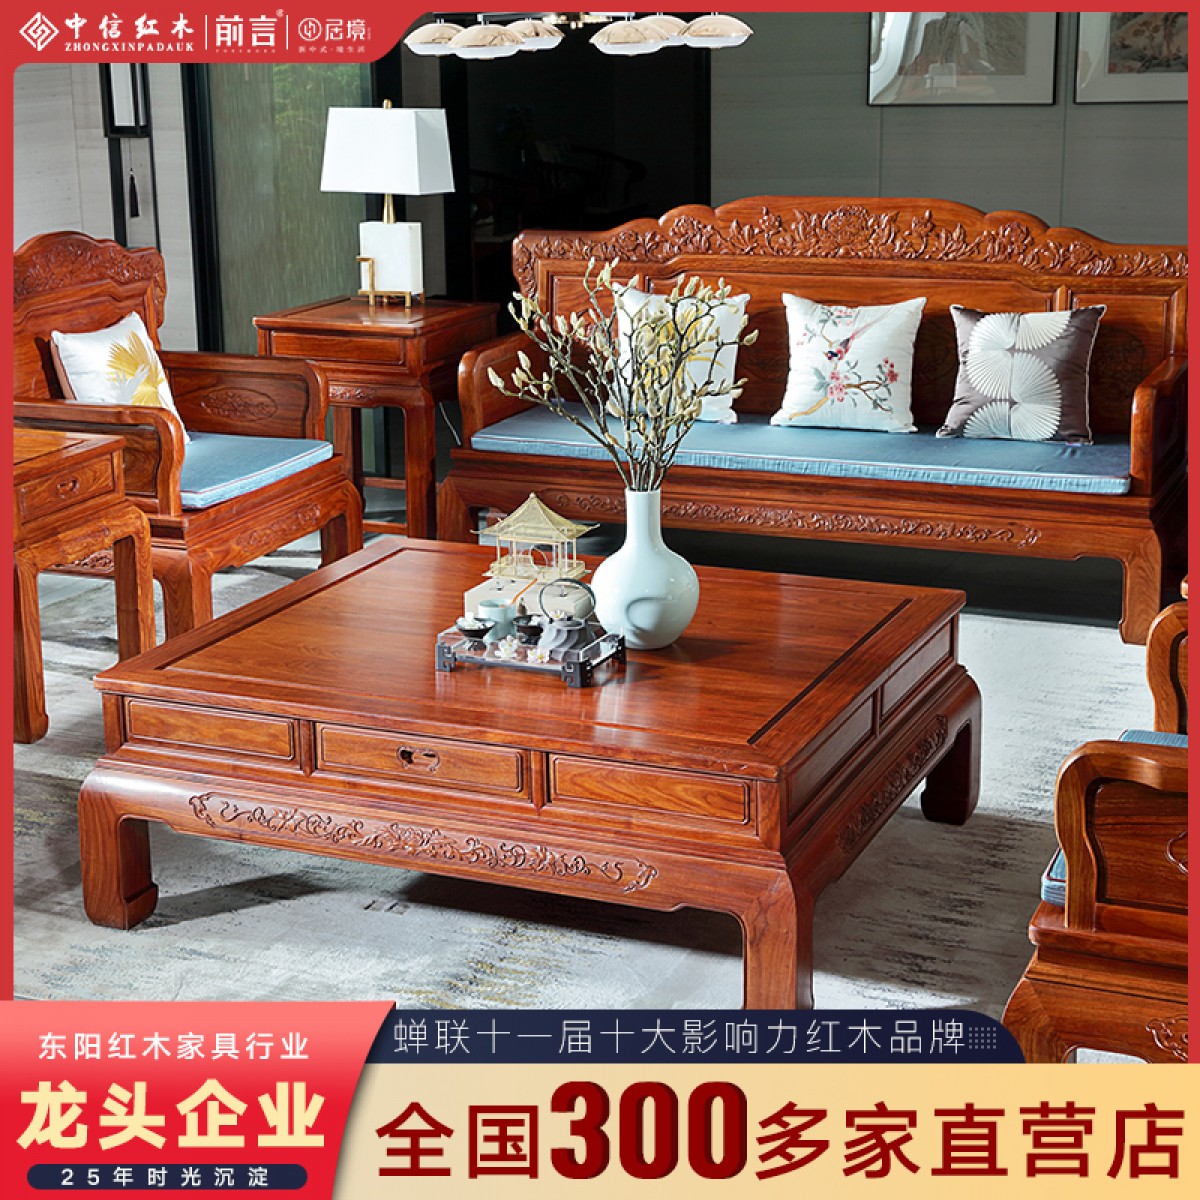 中信红木刺猬紫檀明清沙发客厅组合中式红木家具雕刻古典花梨木